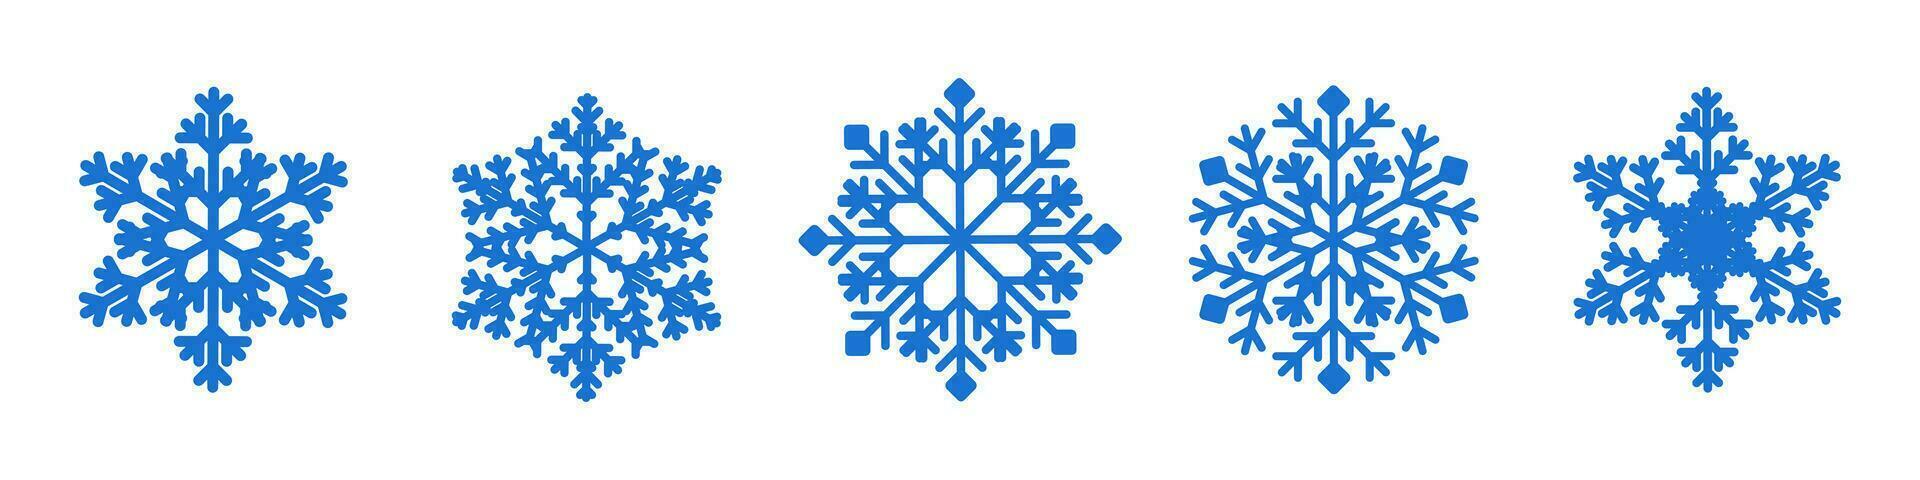 blå snöflinga samling på vit bakgrund. snö flingor silhuett. ny år uppsättning snöflingor för jul baner, kort, dekor vektor